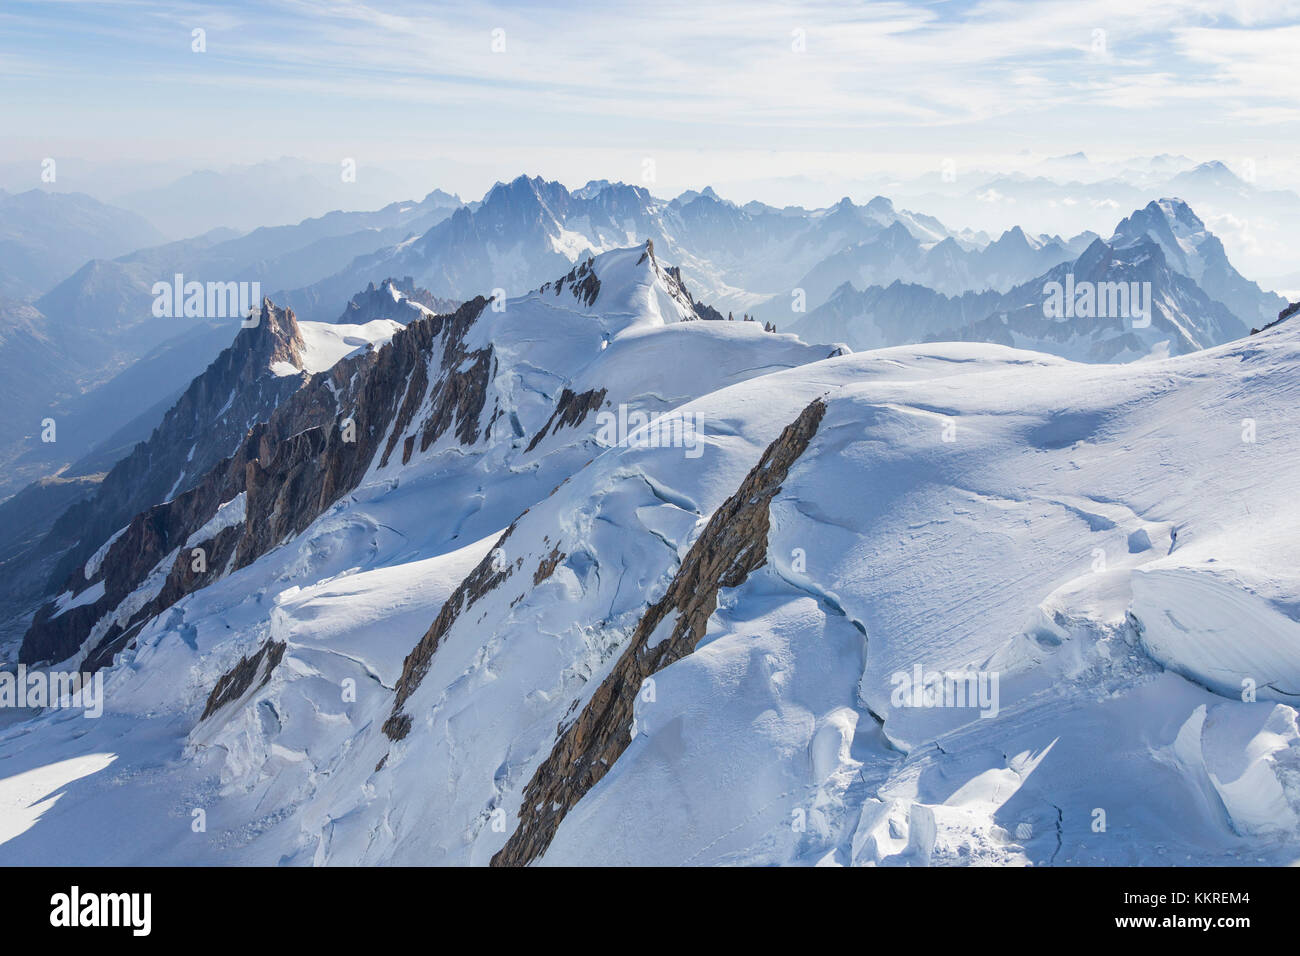 Les glaciers du Mont Blanc d'une vue aérienne. Chamonix, France, Europe Banque D'Images